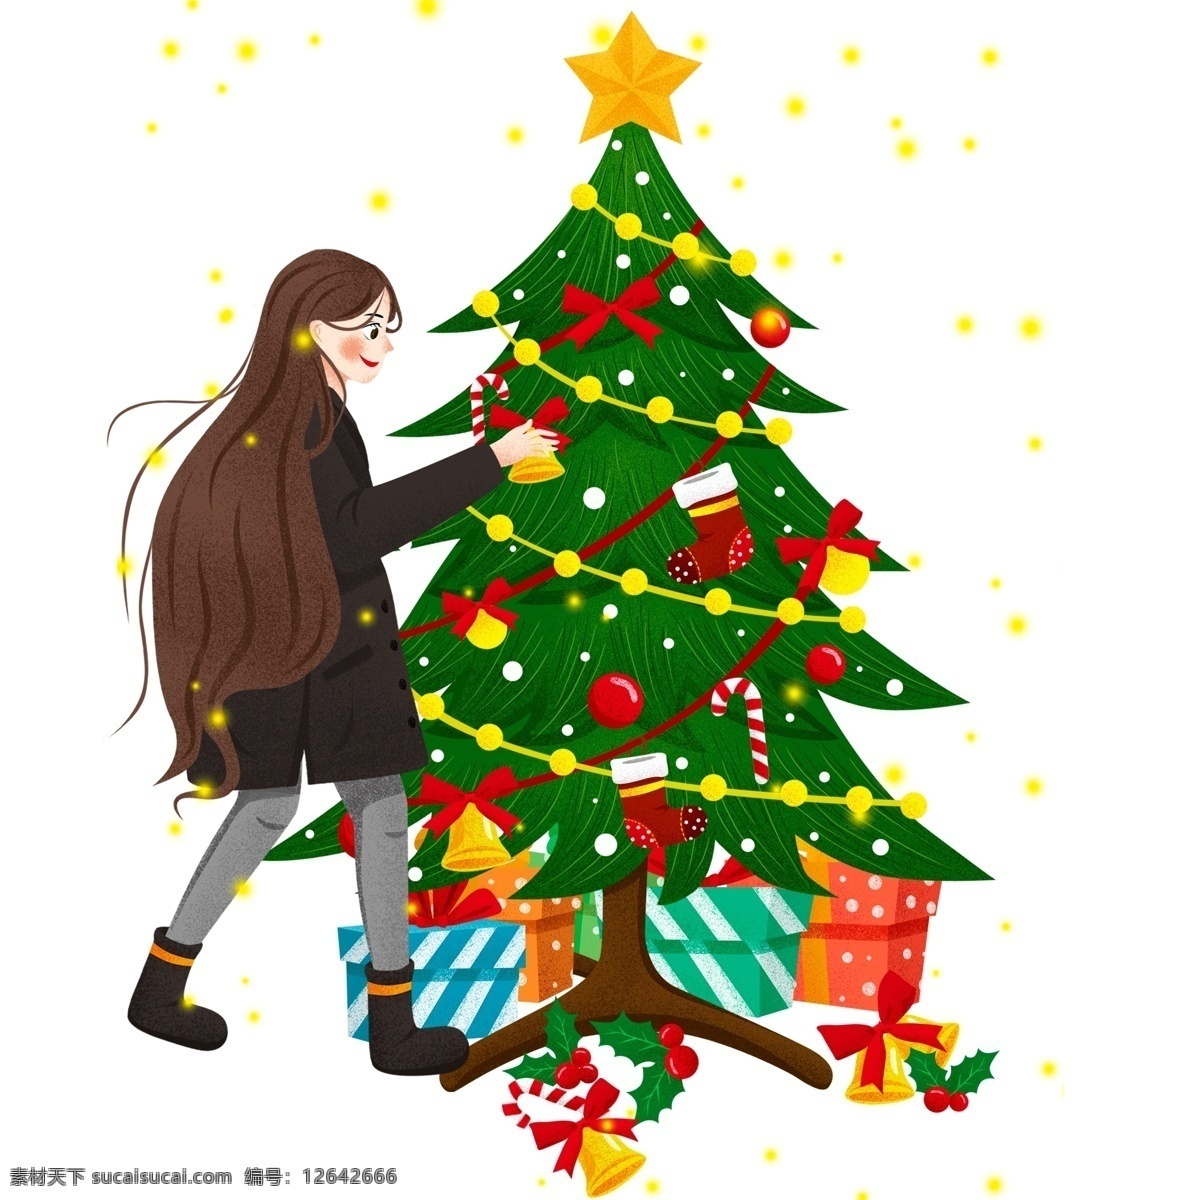 彩绘 小清 新装 饰 圣诞树 女孩 圣诞节 节日 礼物 插画 过圣诞 psd设计